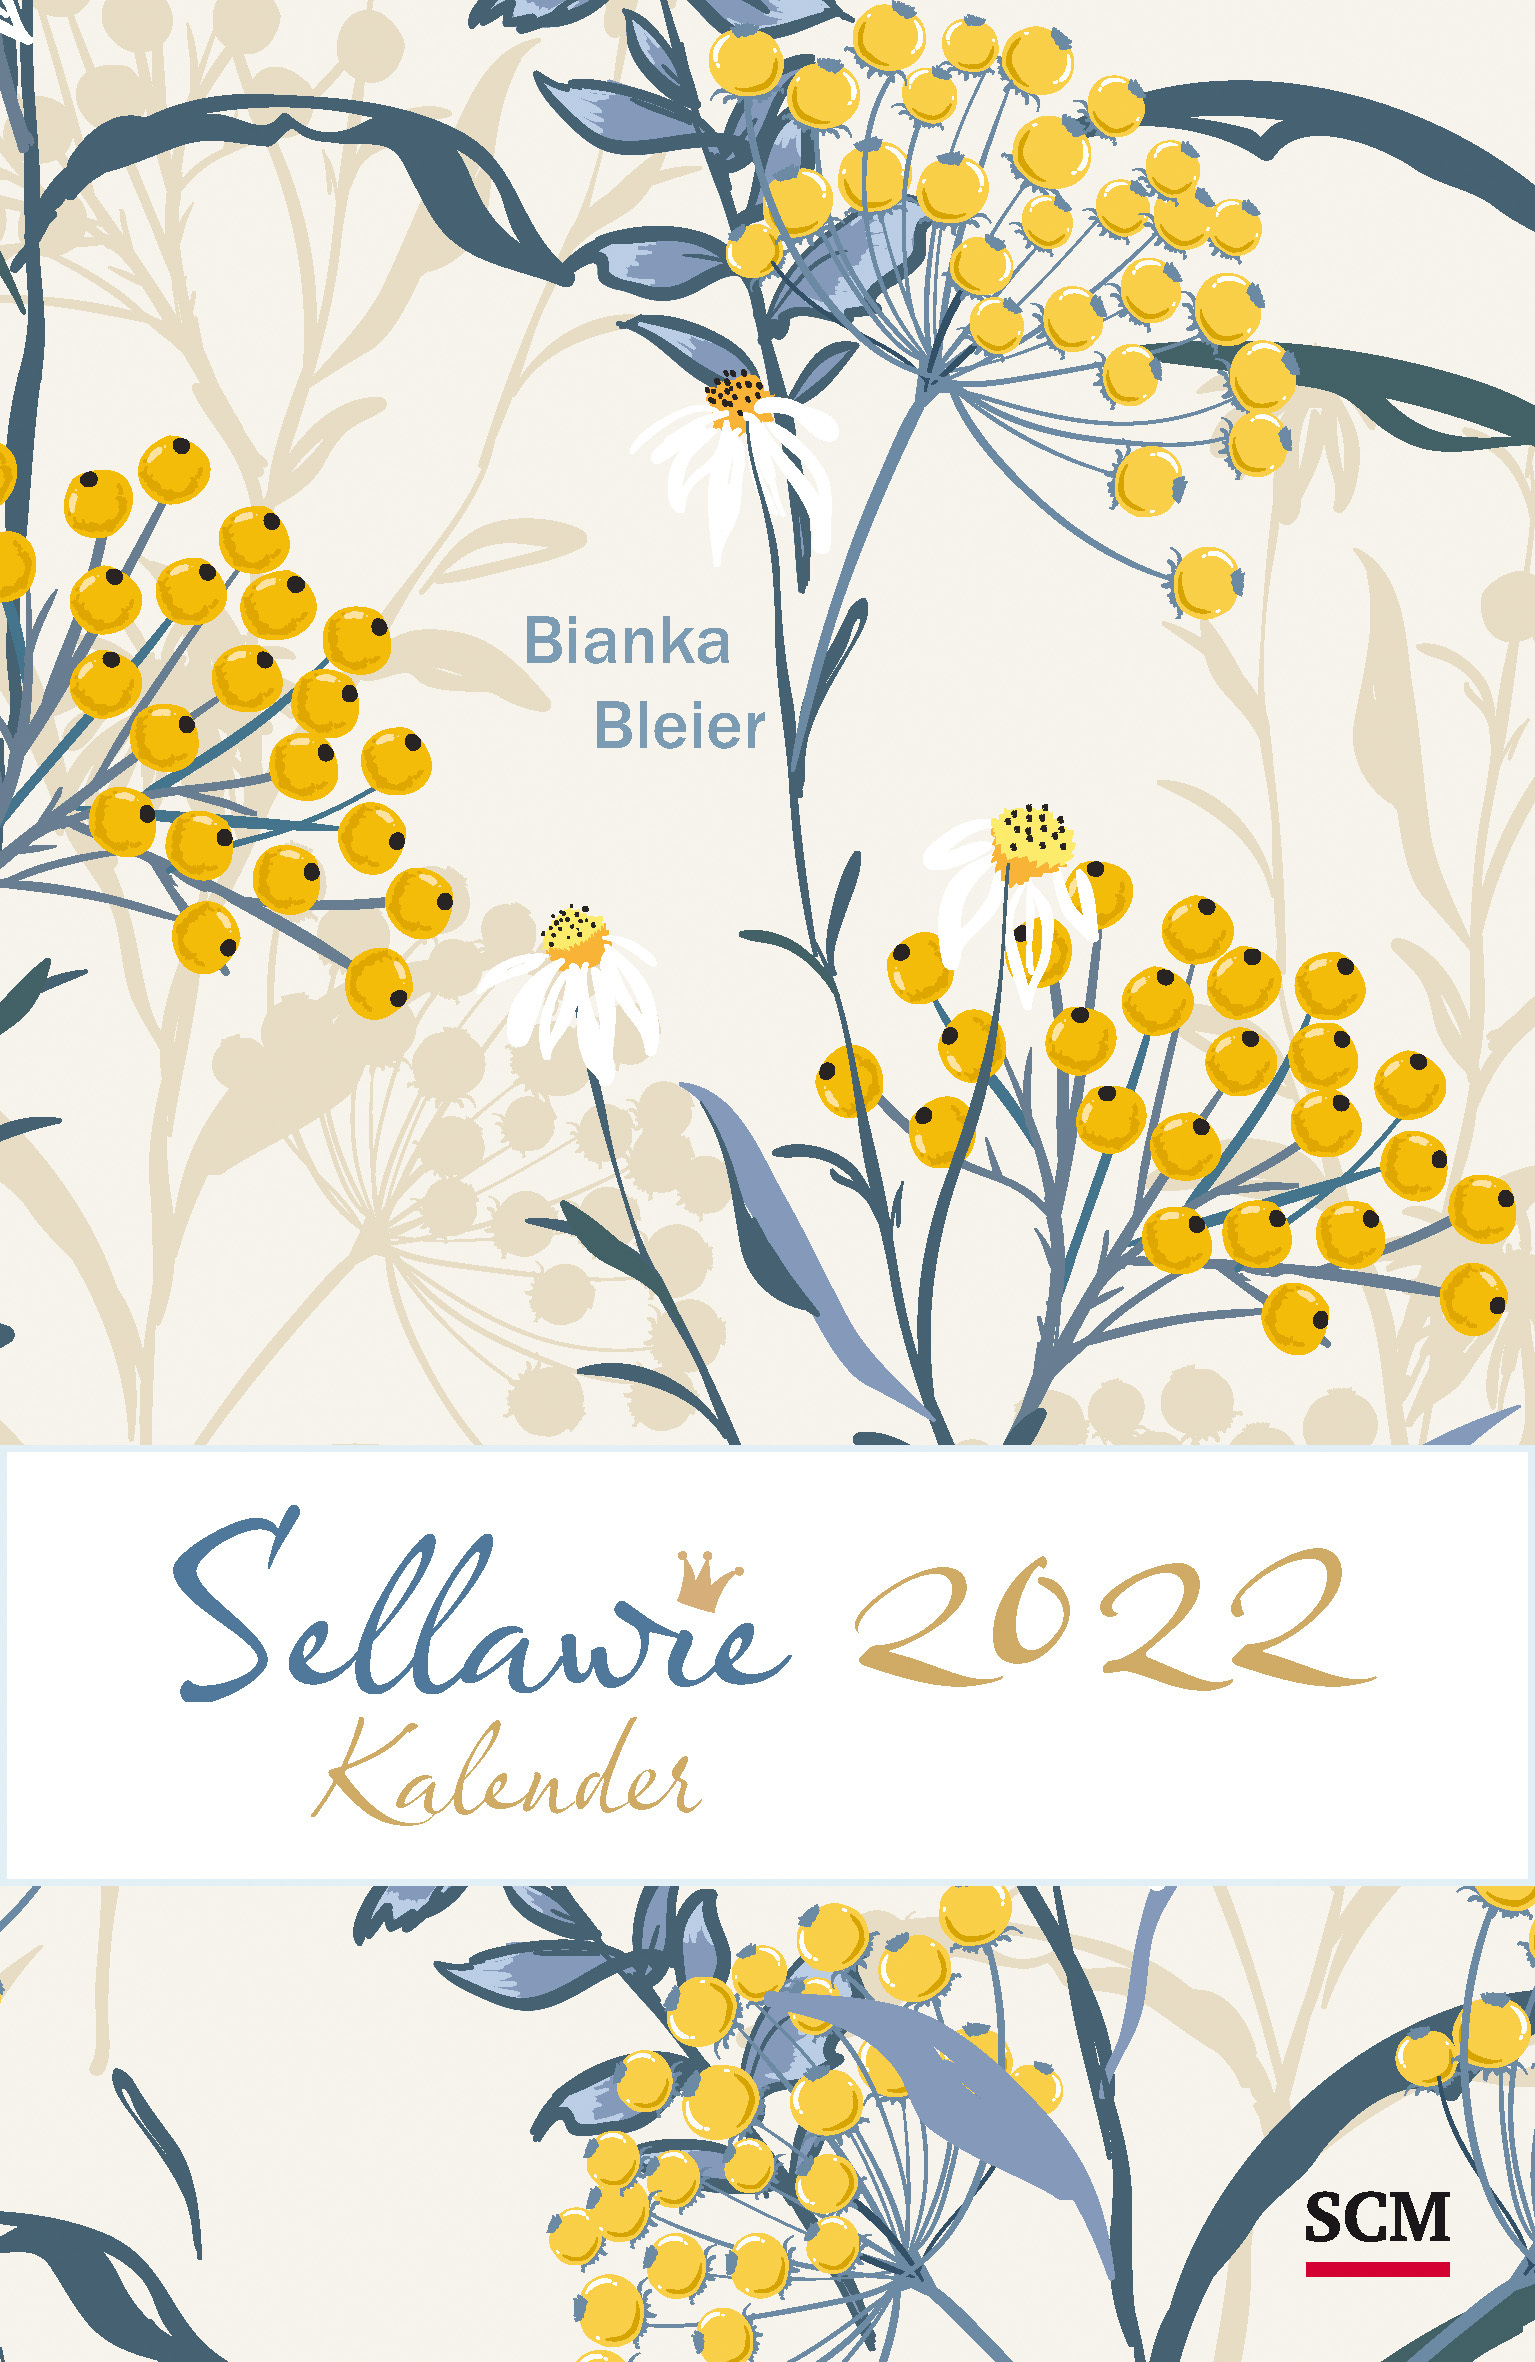 Sellawie - Taschenkalender